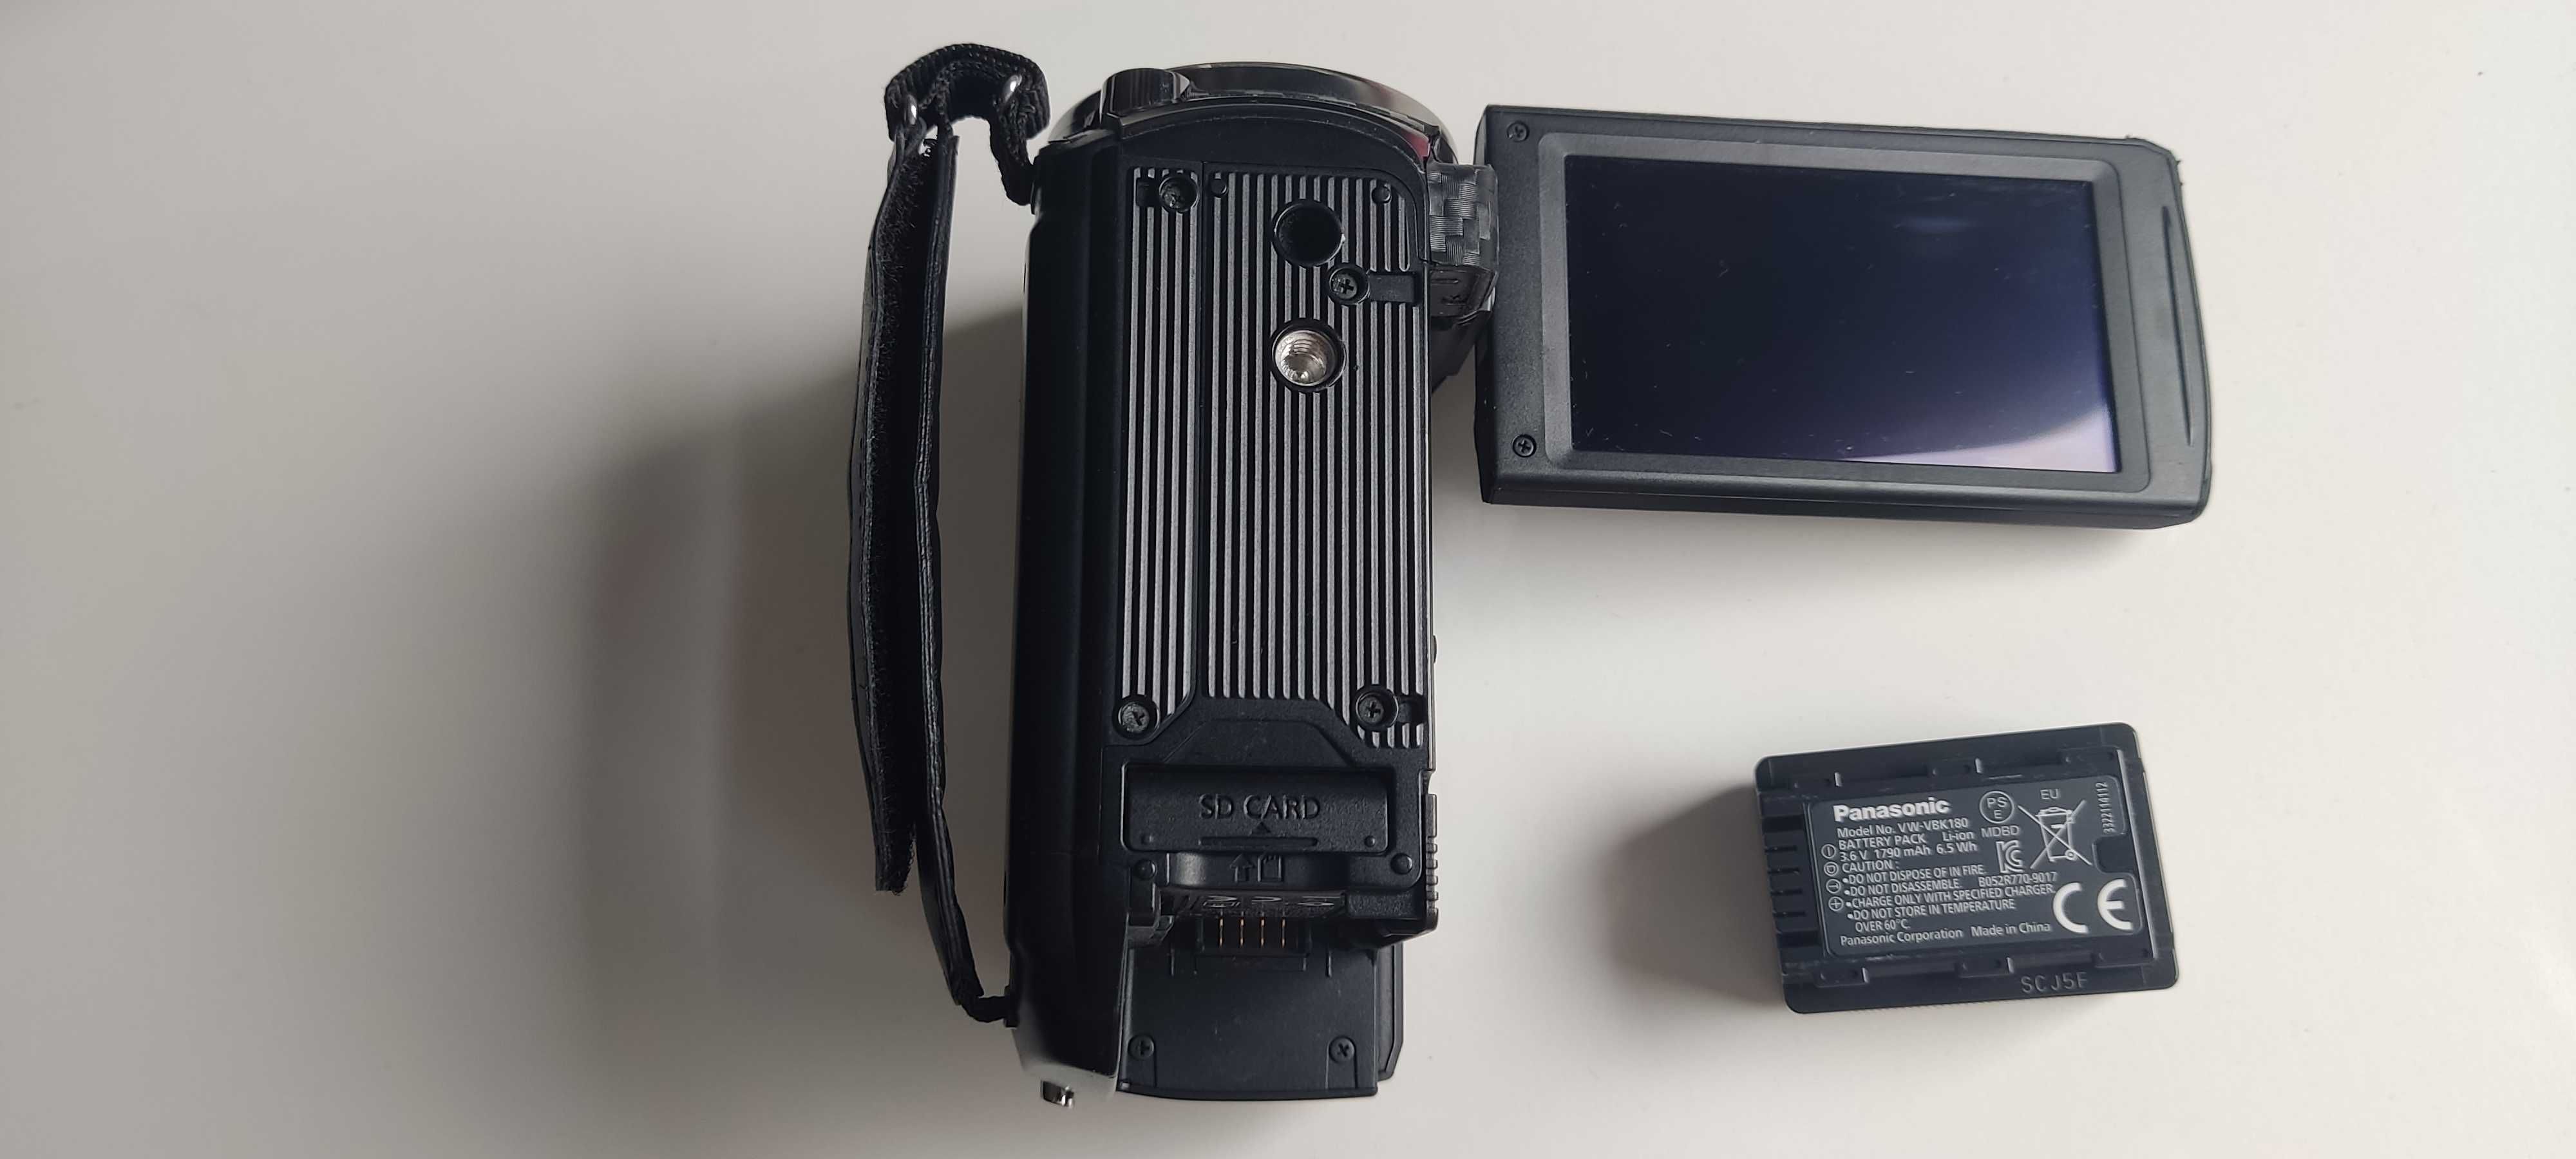 Kamera Panasonic HC-V700- full HD, 26 x zoom, stabilizacja optyczna